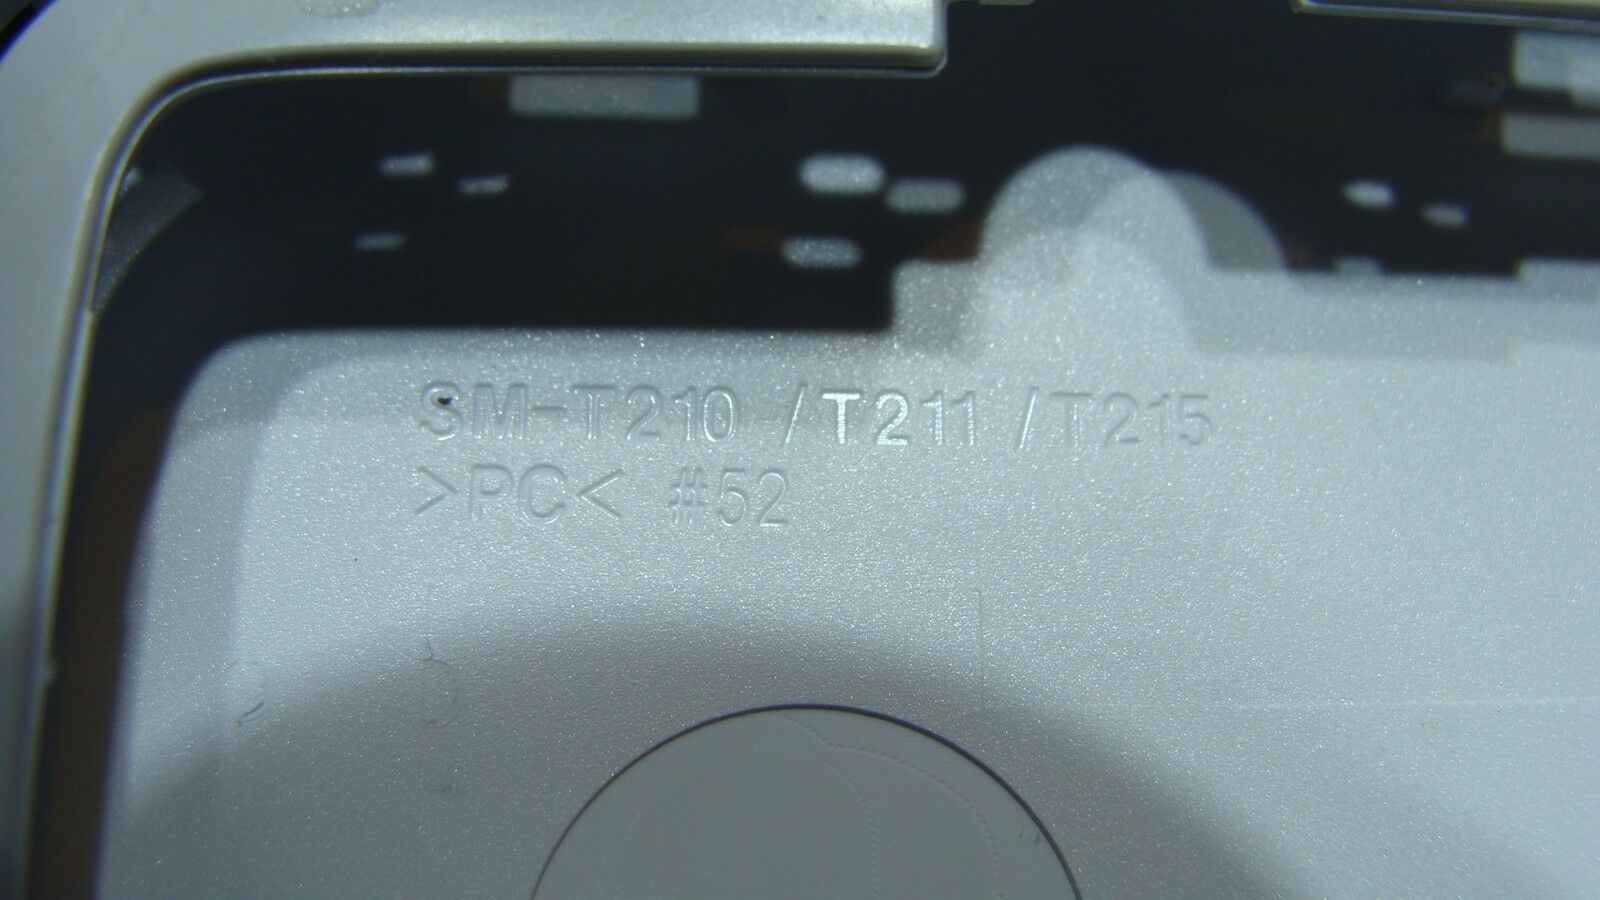 Samsung Galaxy Tab SM-T210R 7